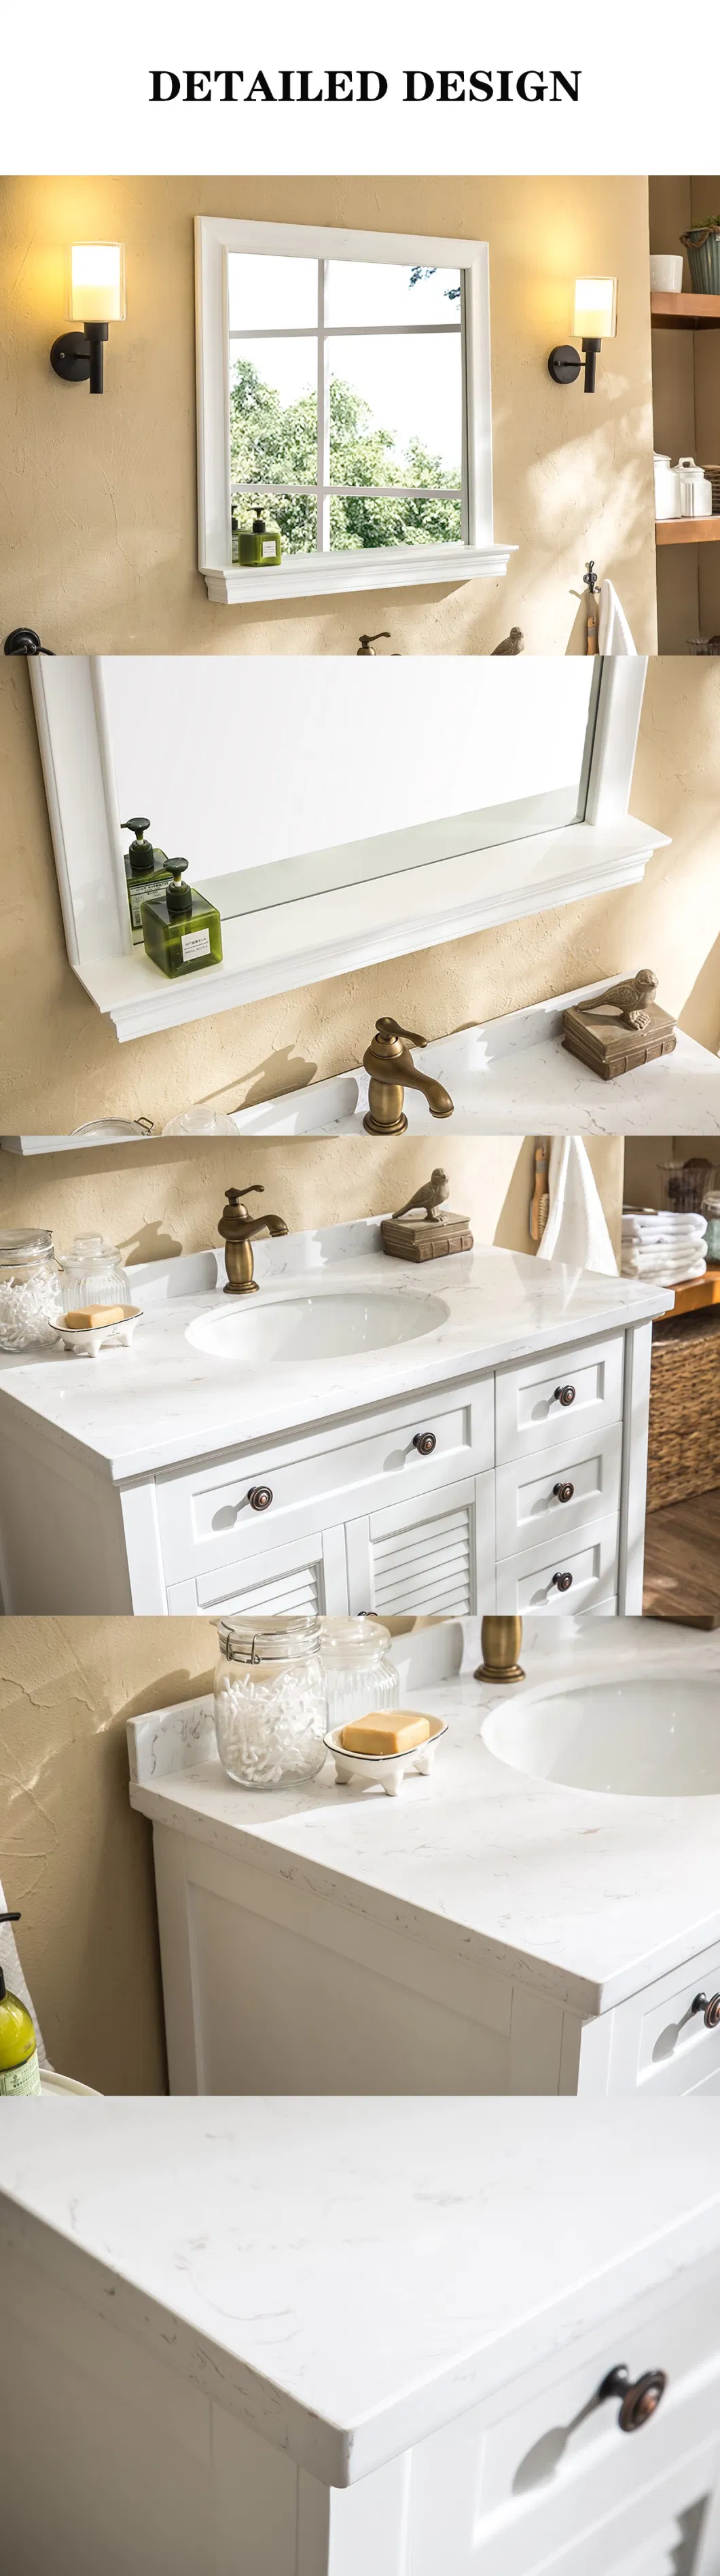 American Style Classical Bathroom Vanity Drawers Bathroom Furniture Set Luxury Basin Vanity Sink Bathroom Cabinet with Mirror